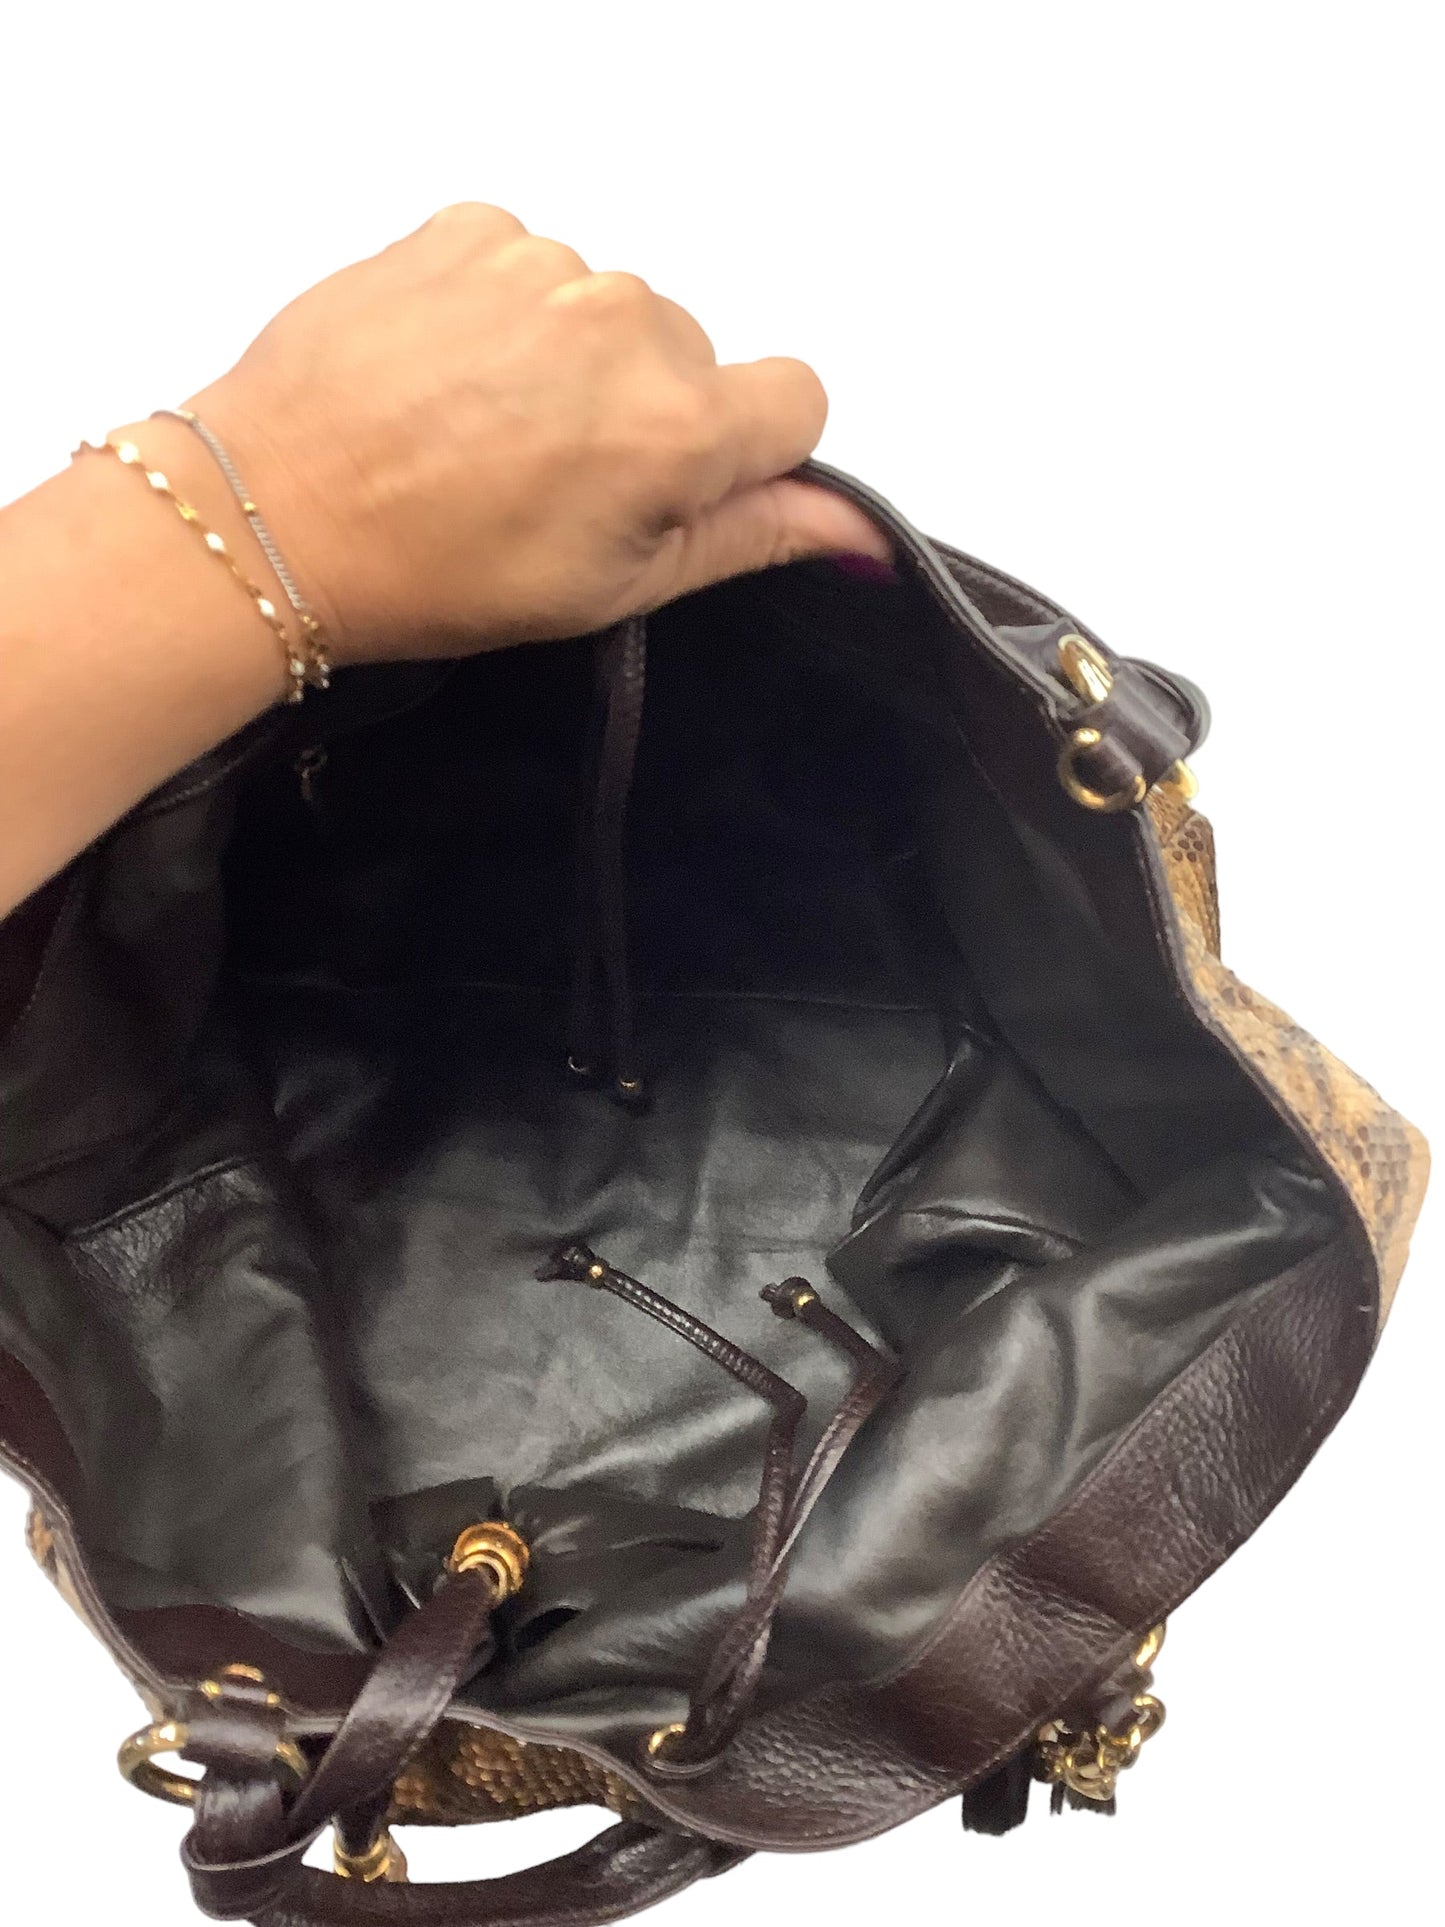 Handbag Designer By Gucci  Size: Large